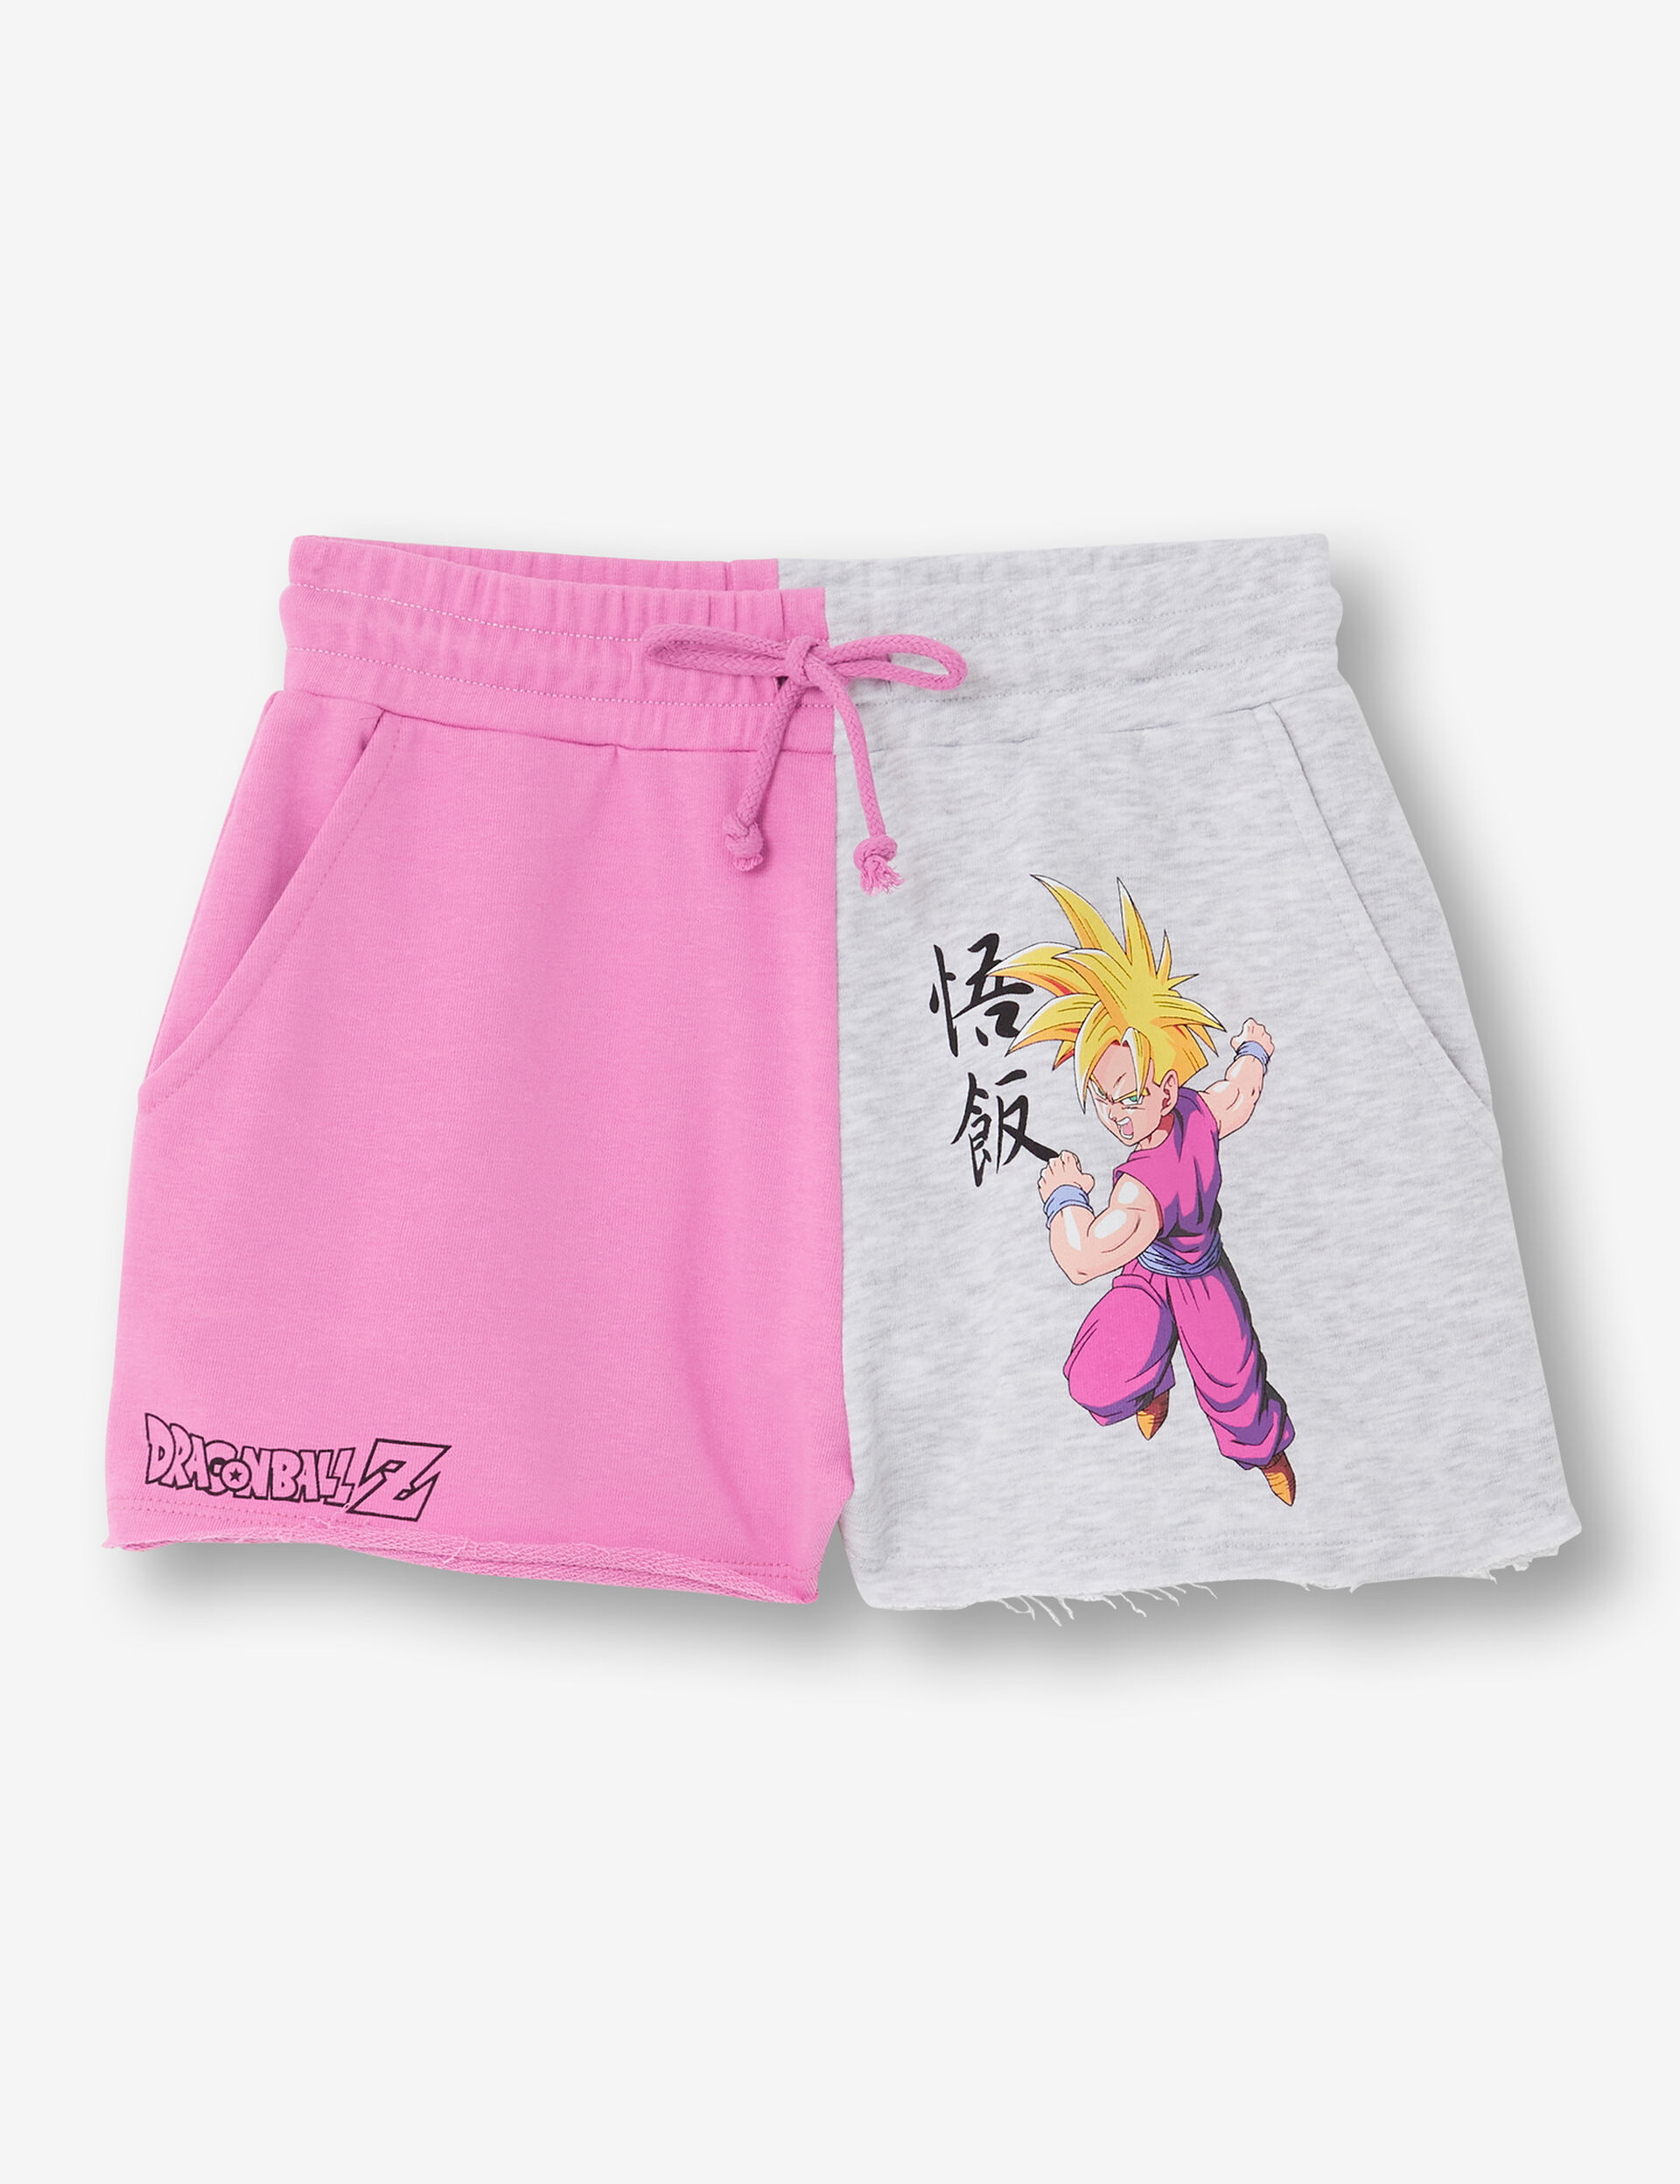 Two-tone Dragon Ball Z shorts